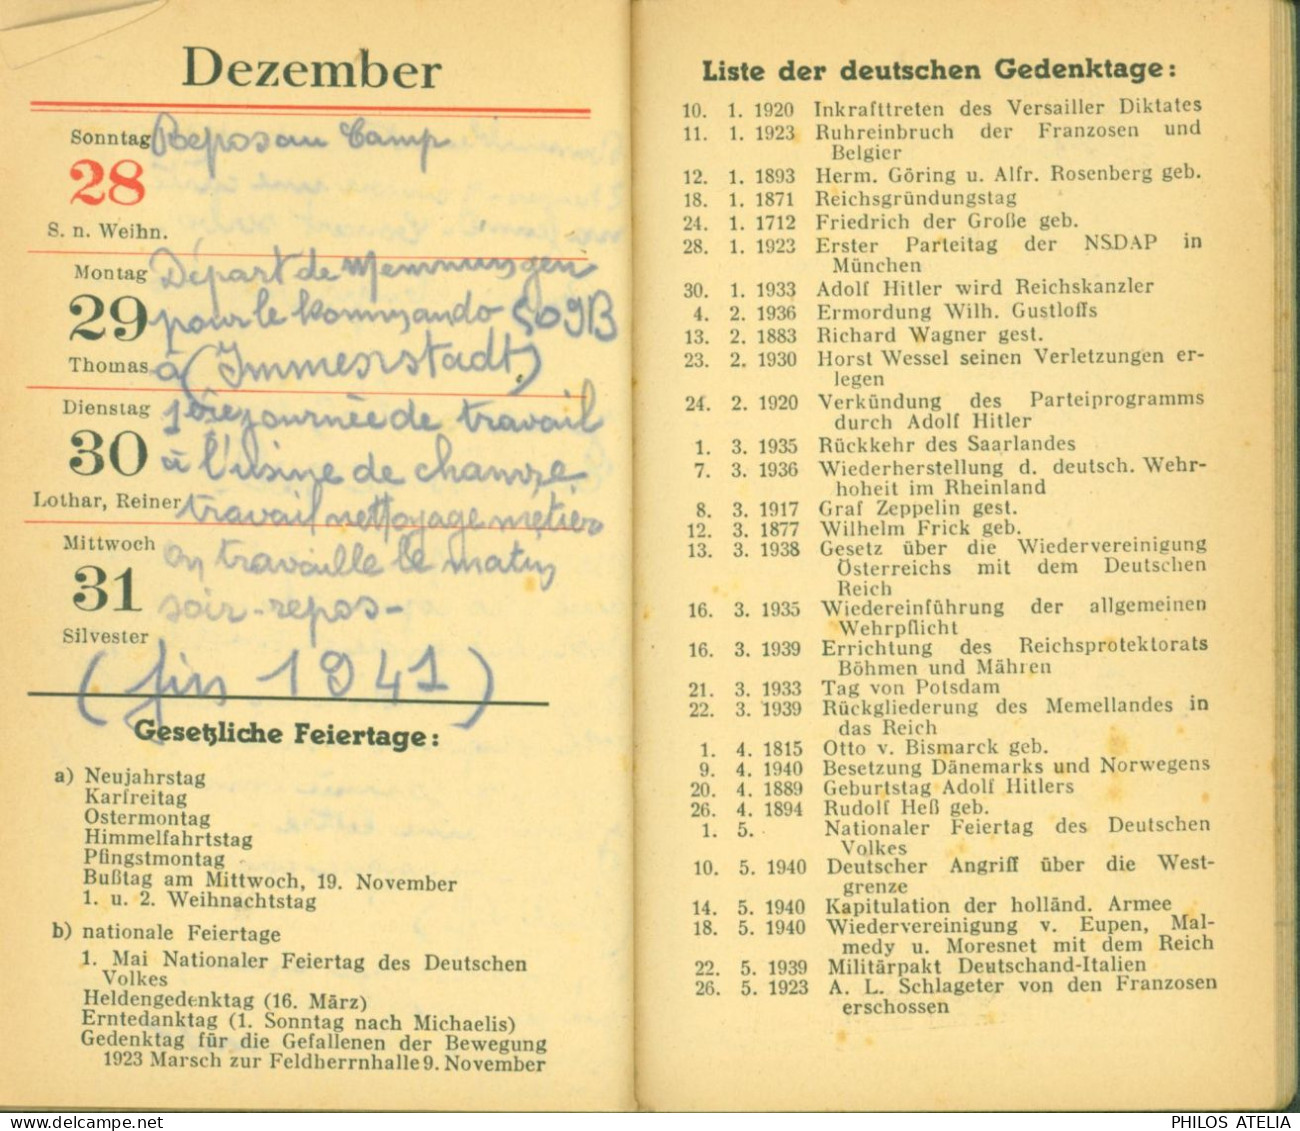 Guerre 40 Almanach Notiz Kalender 1941 Louis Serra De Port Vendres Prisonnier Stalag VIIB Memmingen Pro Pétain - Kalenders